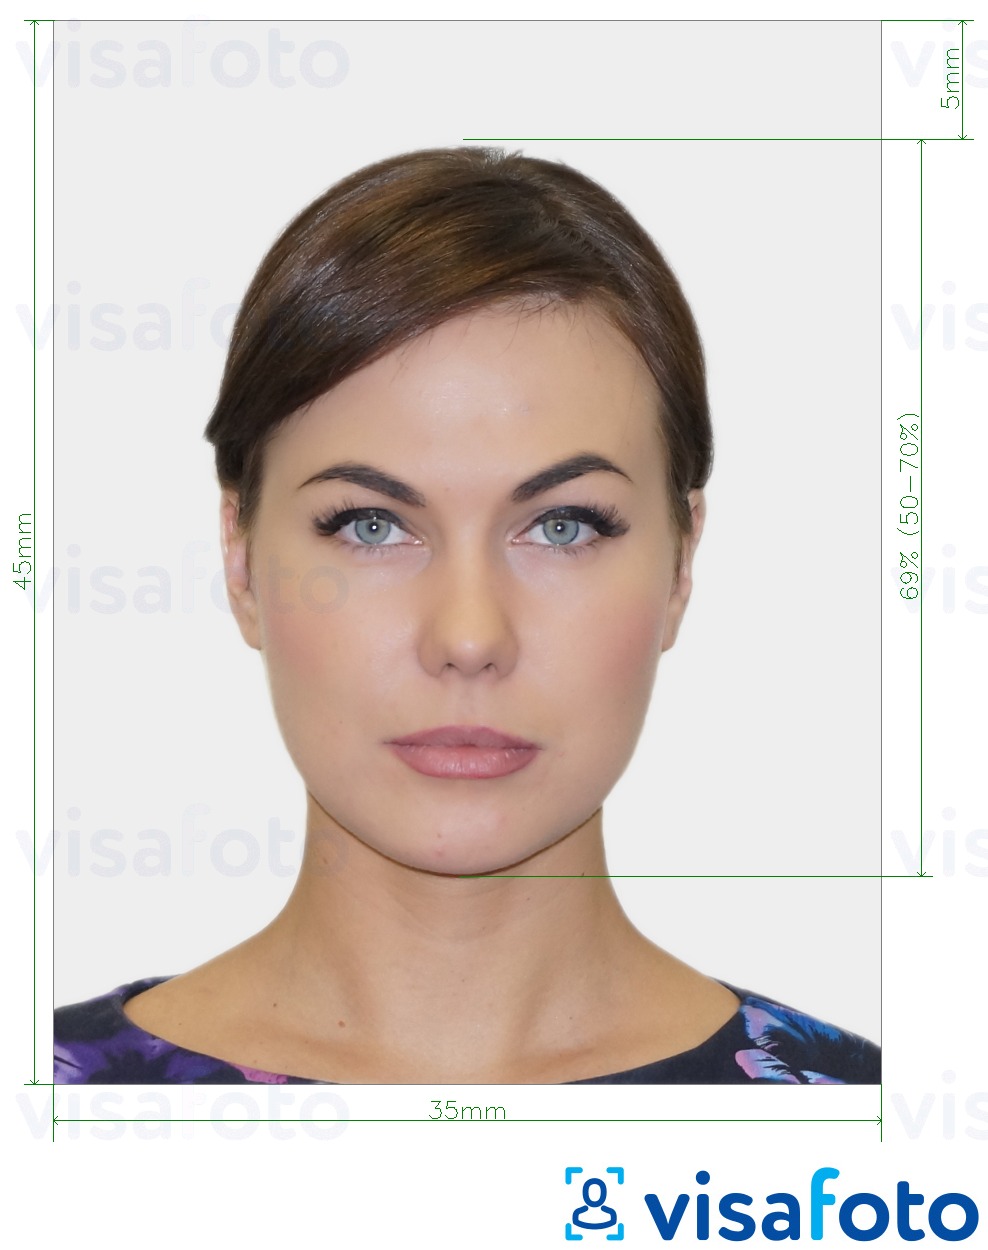 Exemples sur des photos pour Visa Géorgie 35x45 mm (3.5x4.5 cm) avec les spécifications de taille exactes